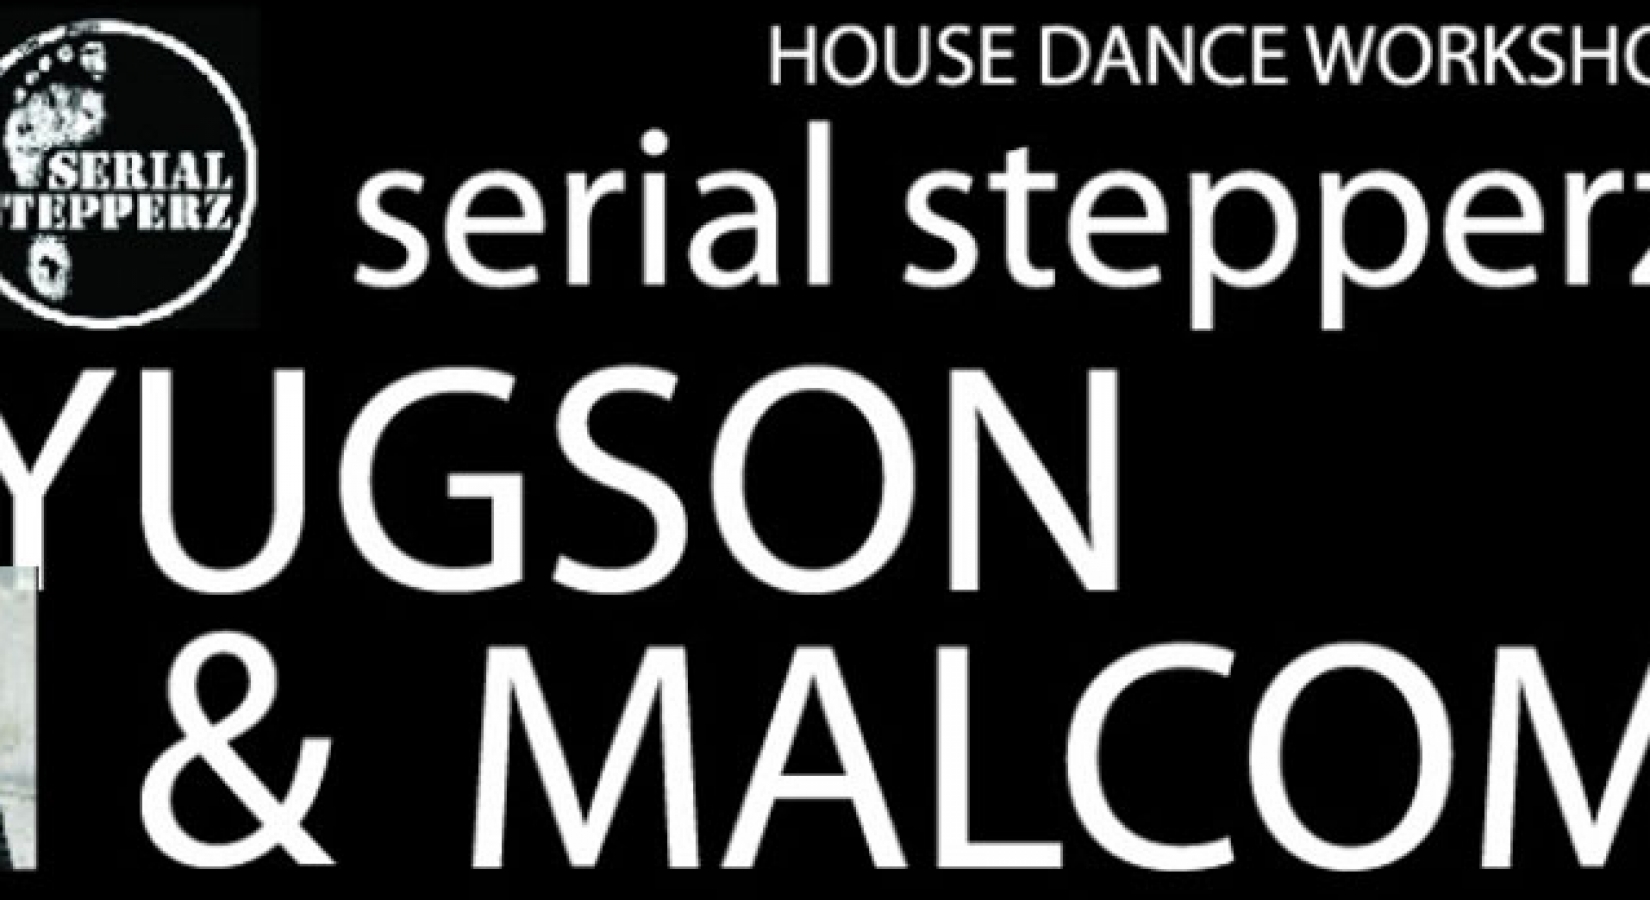 [워크샵]House Dance-Yugson & Malcom